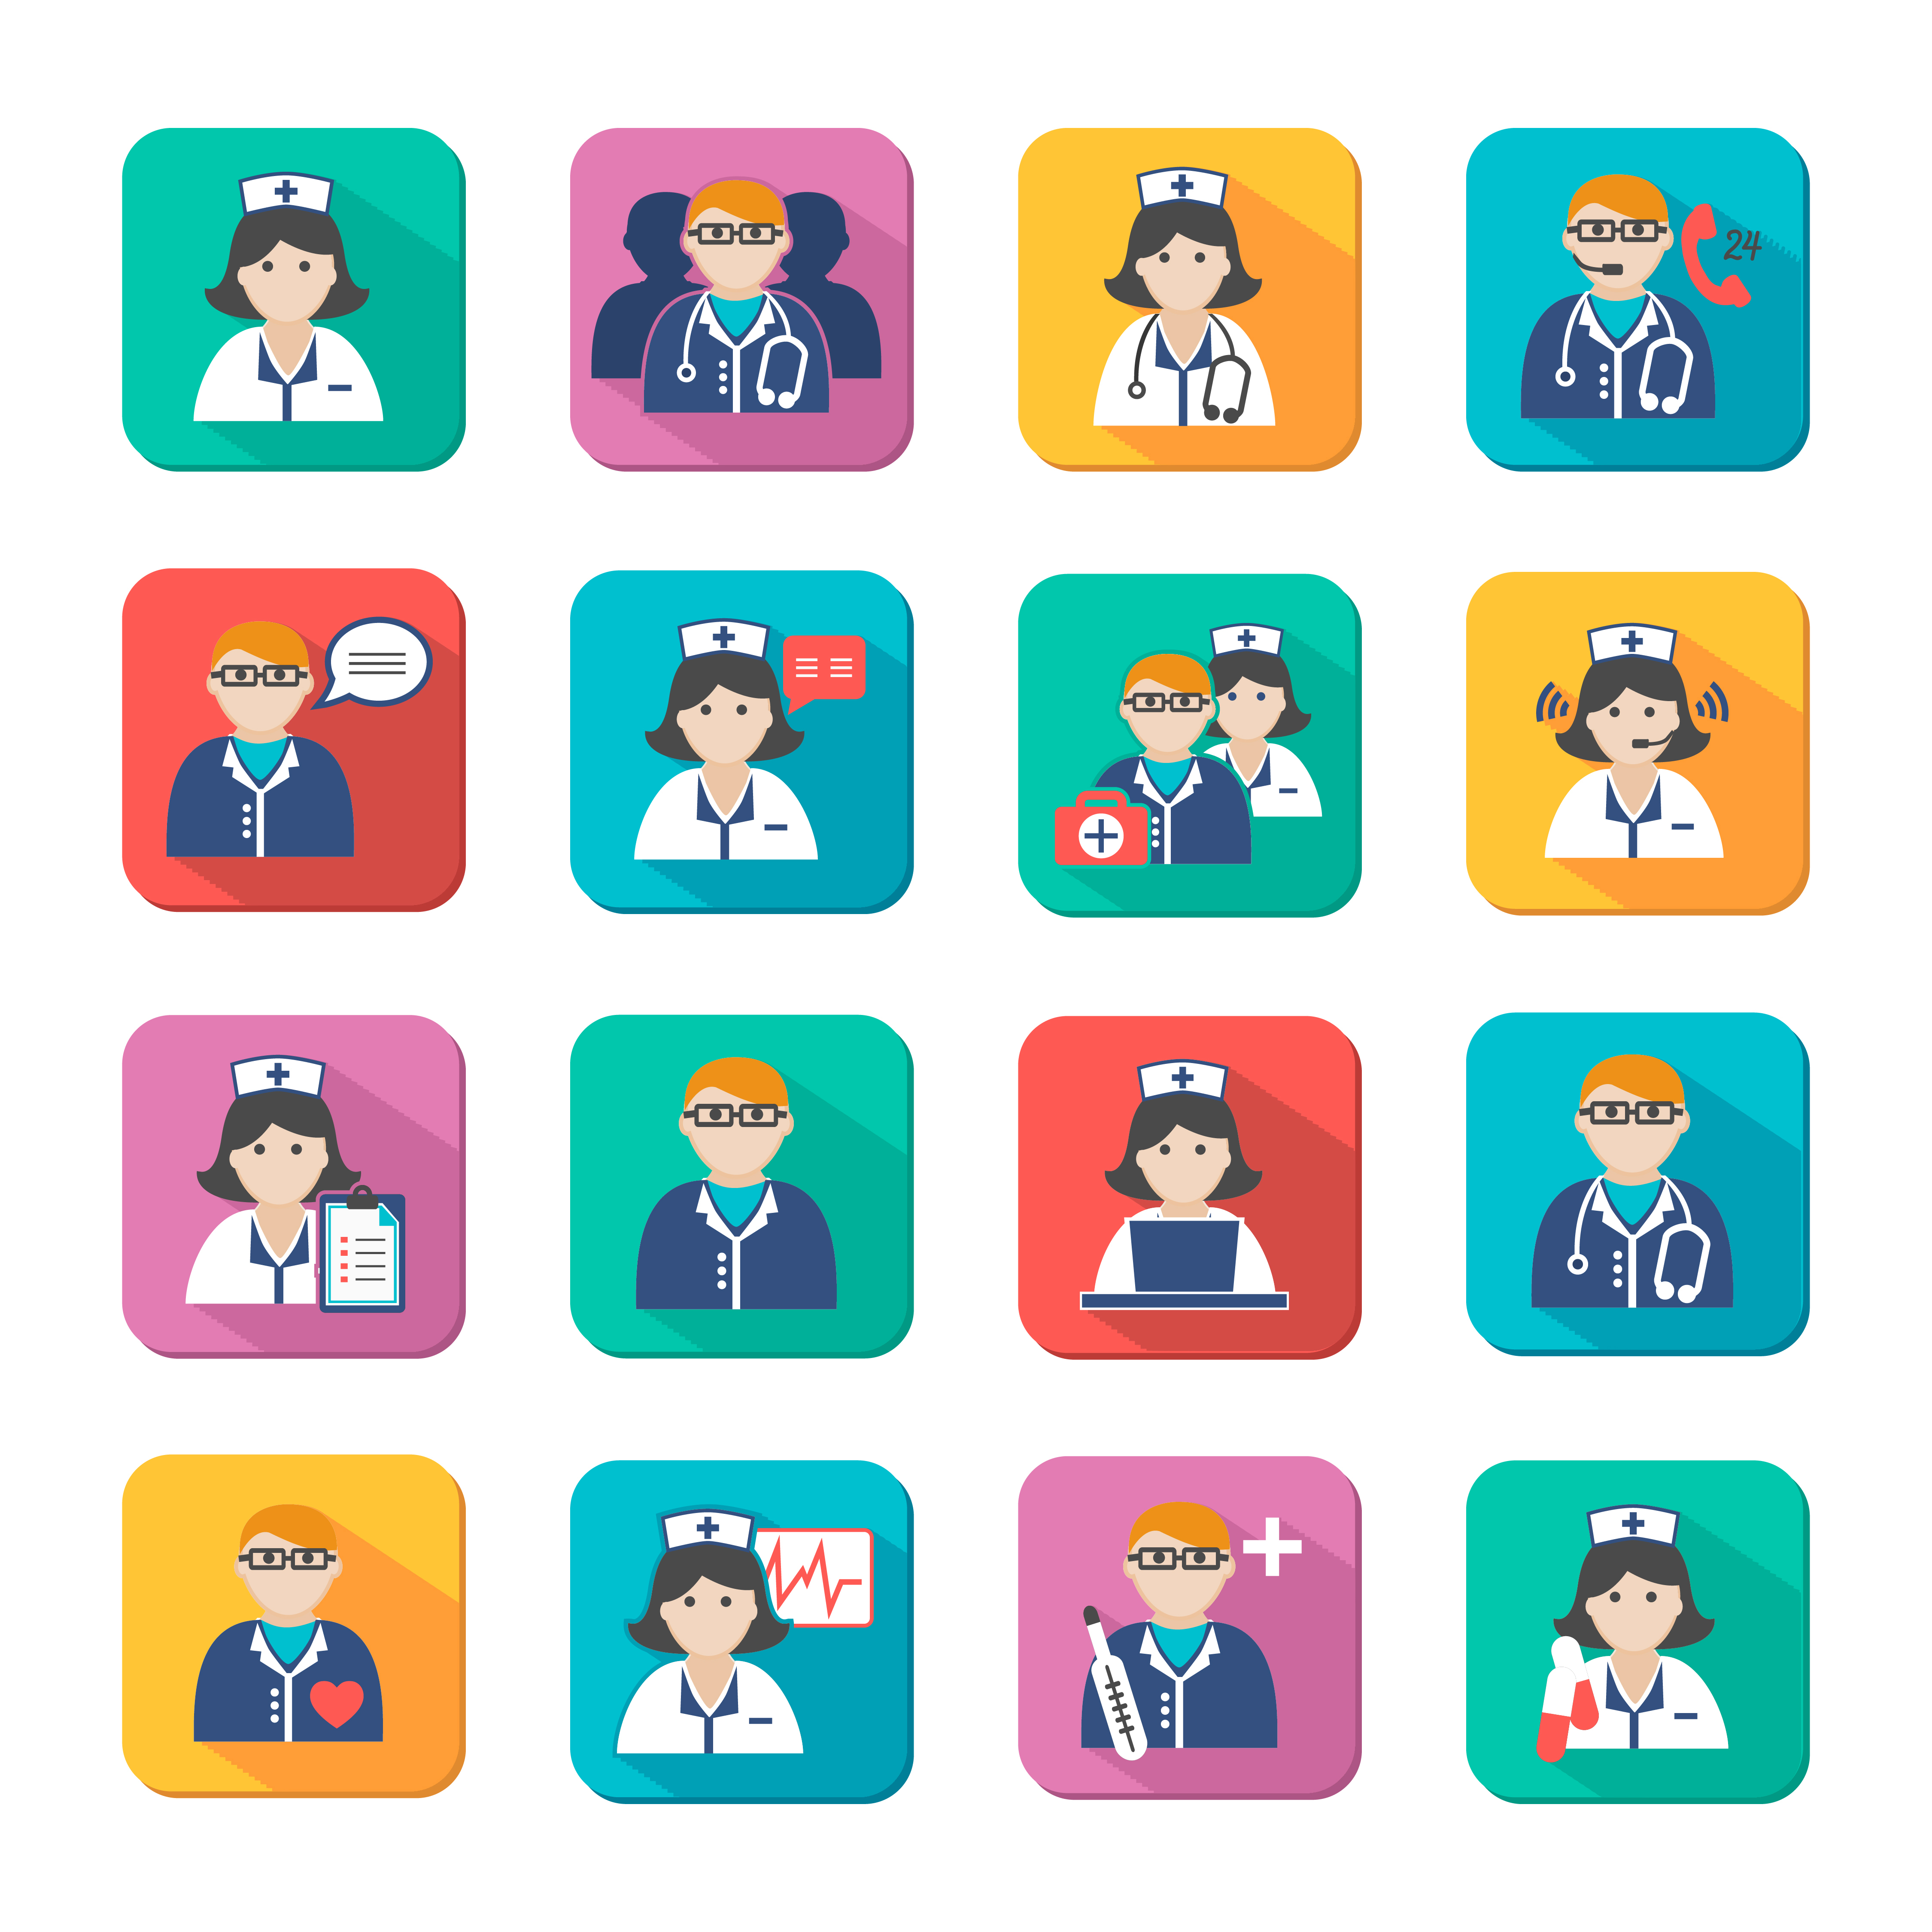 Анализ поведения медицинских работников в популярных социальных сетях